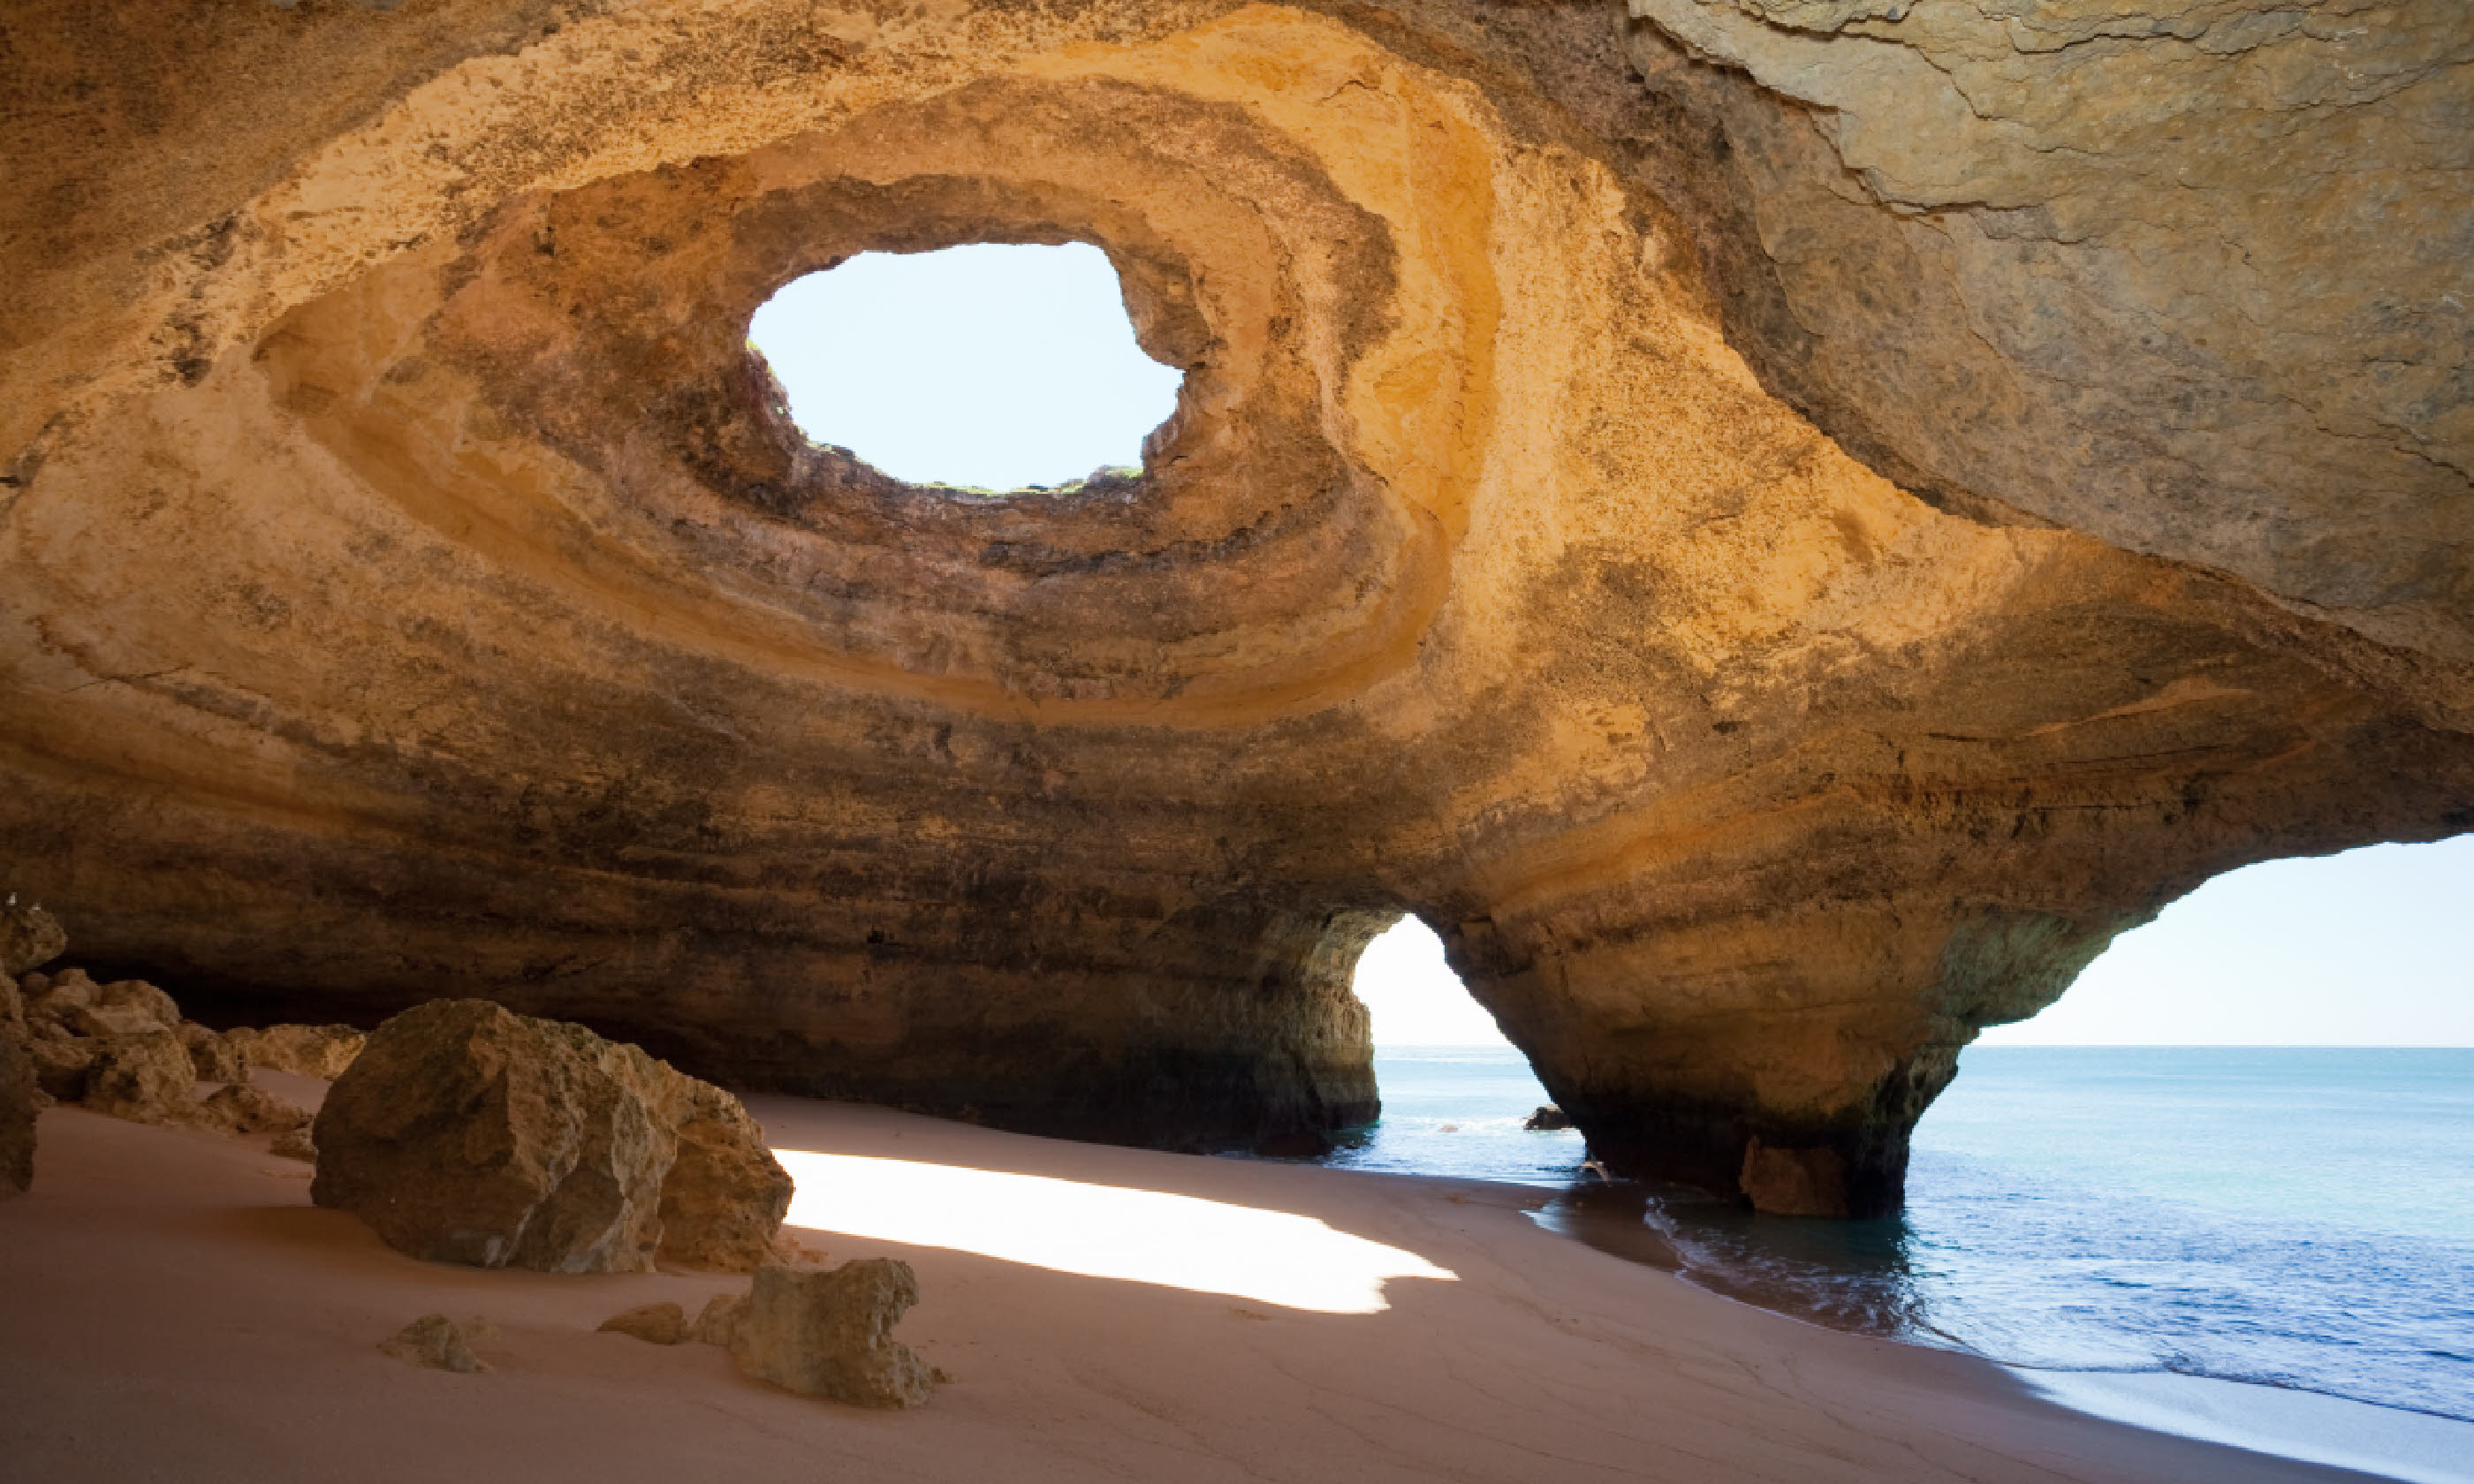 Praia de Benagil in Algarve (Shutterstock)